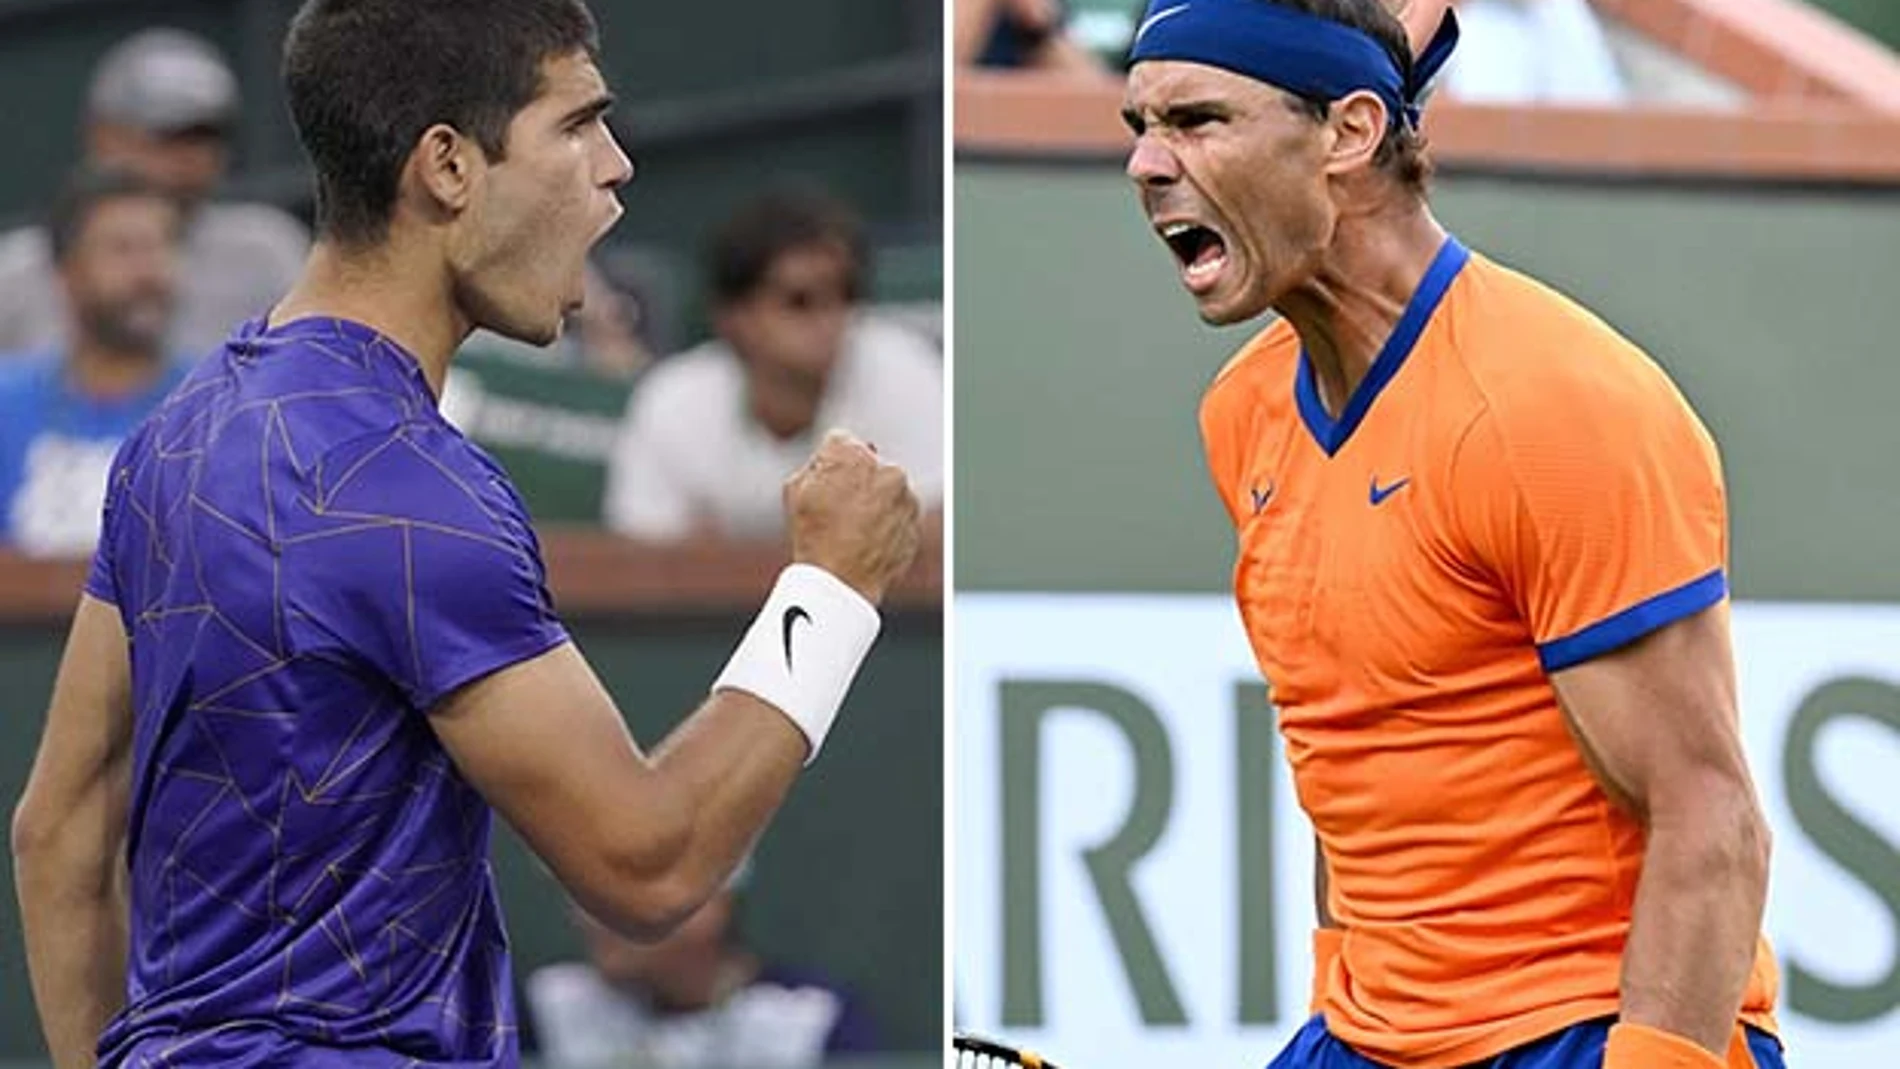 Carlos Alcaraz y Rafa Nadal se enfrentarán en semifinales de Indian Wells.